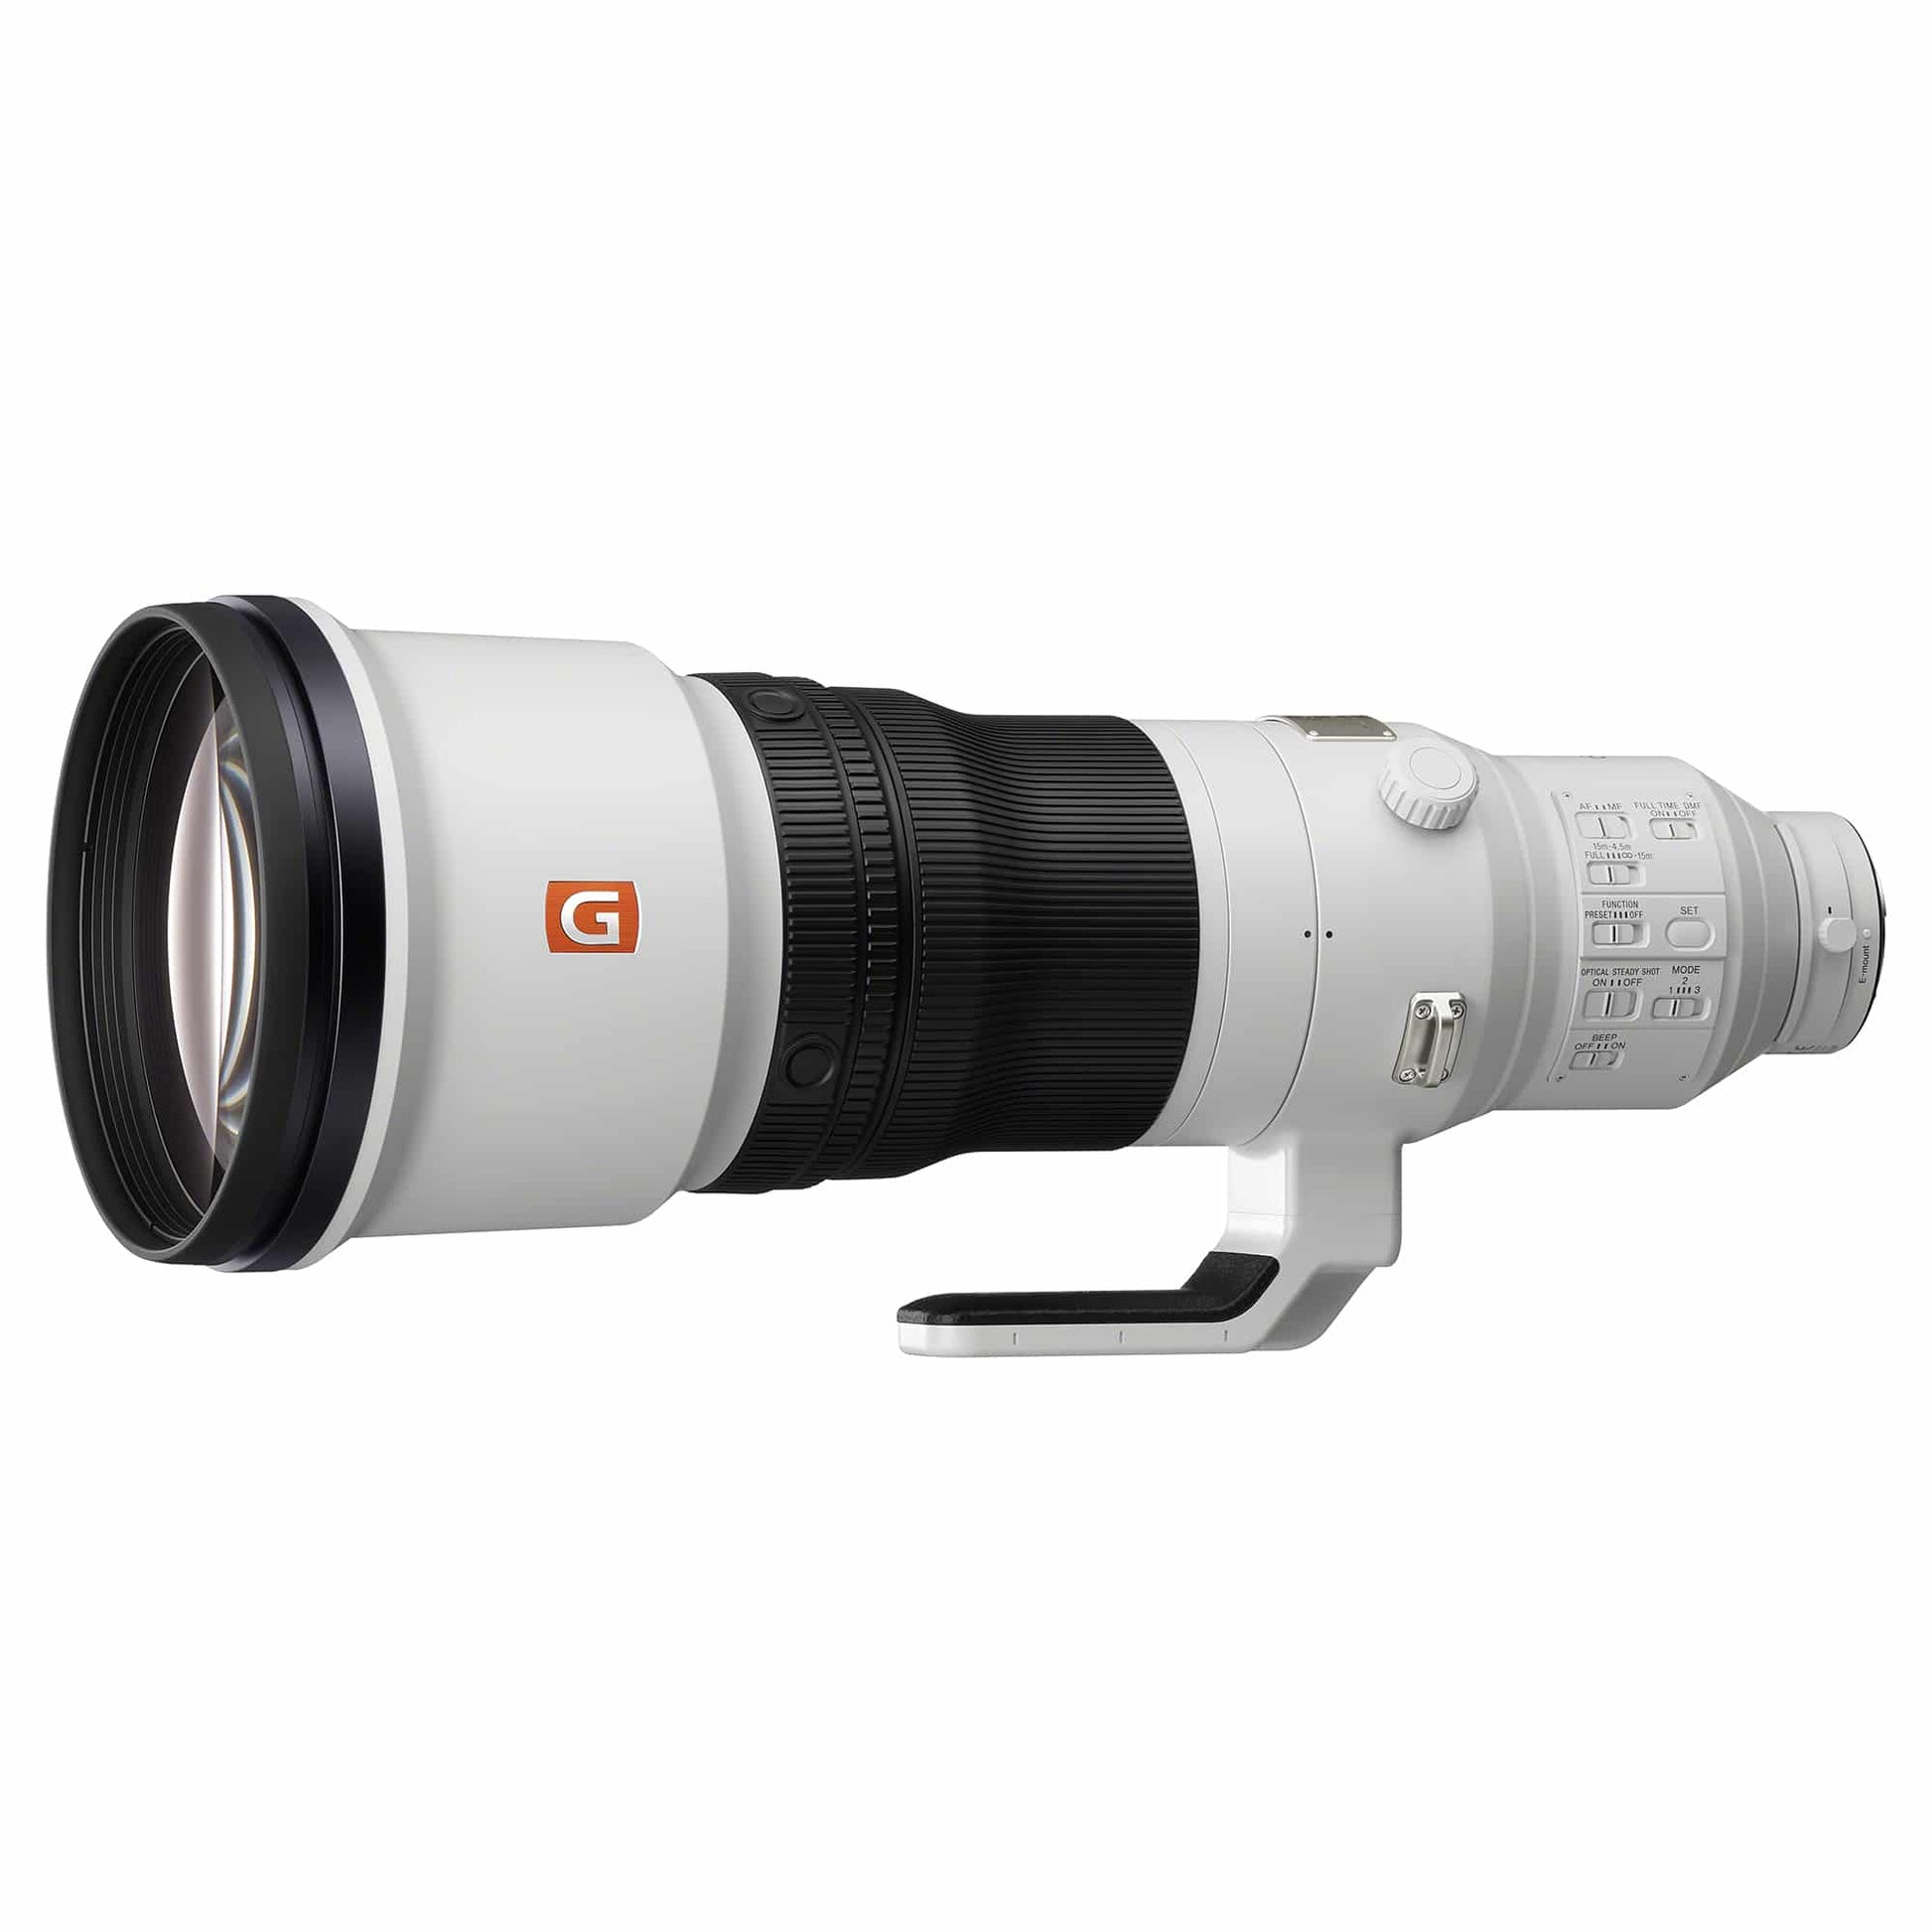 Sony SEL600F40GM FE 600mm F/4 GM OSS Lens, Ø40.5 (Rear Filter Slot).